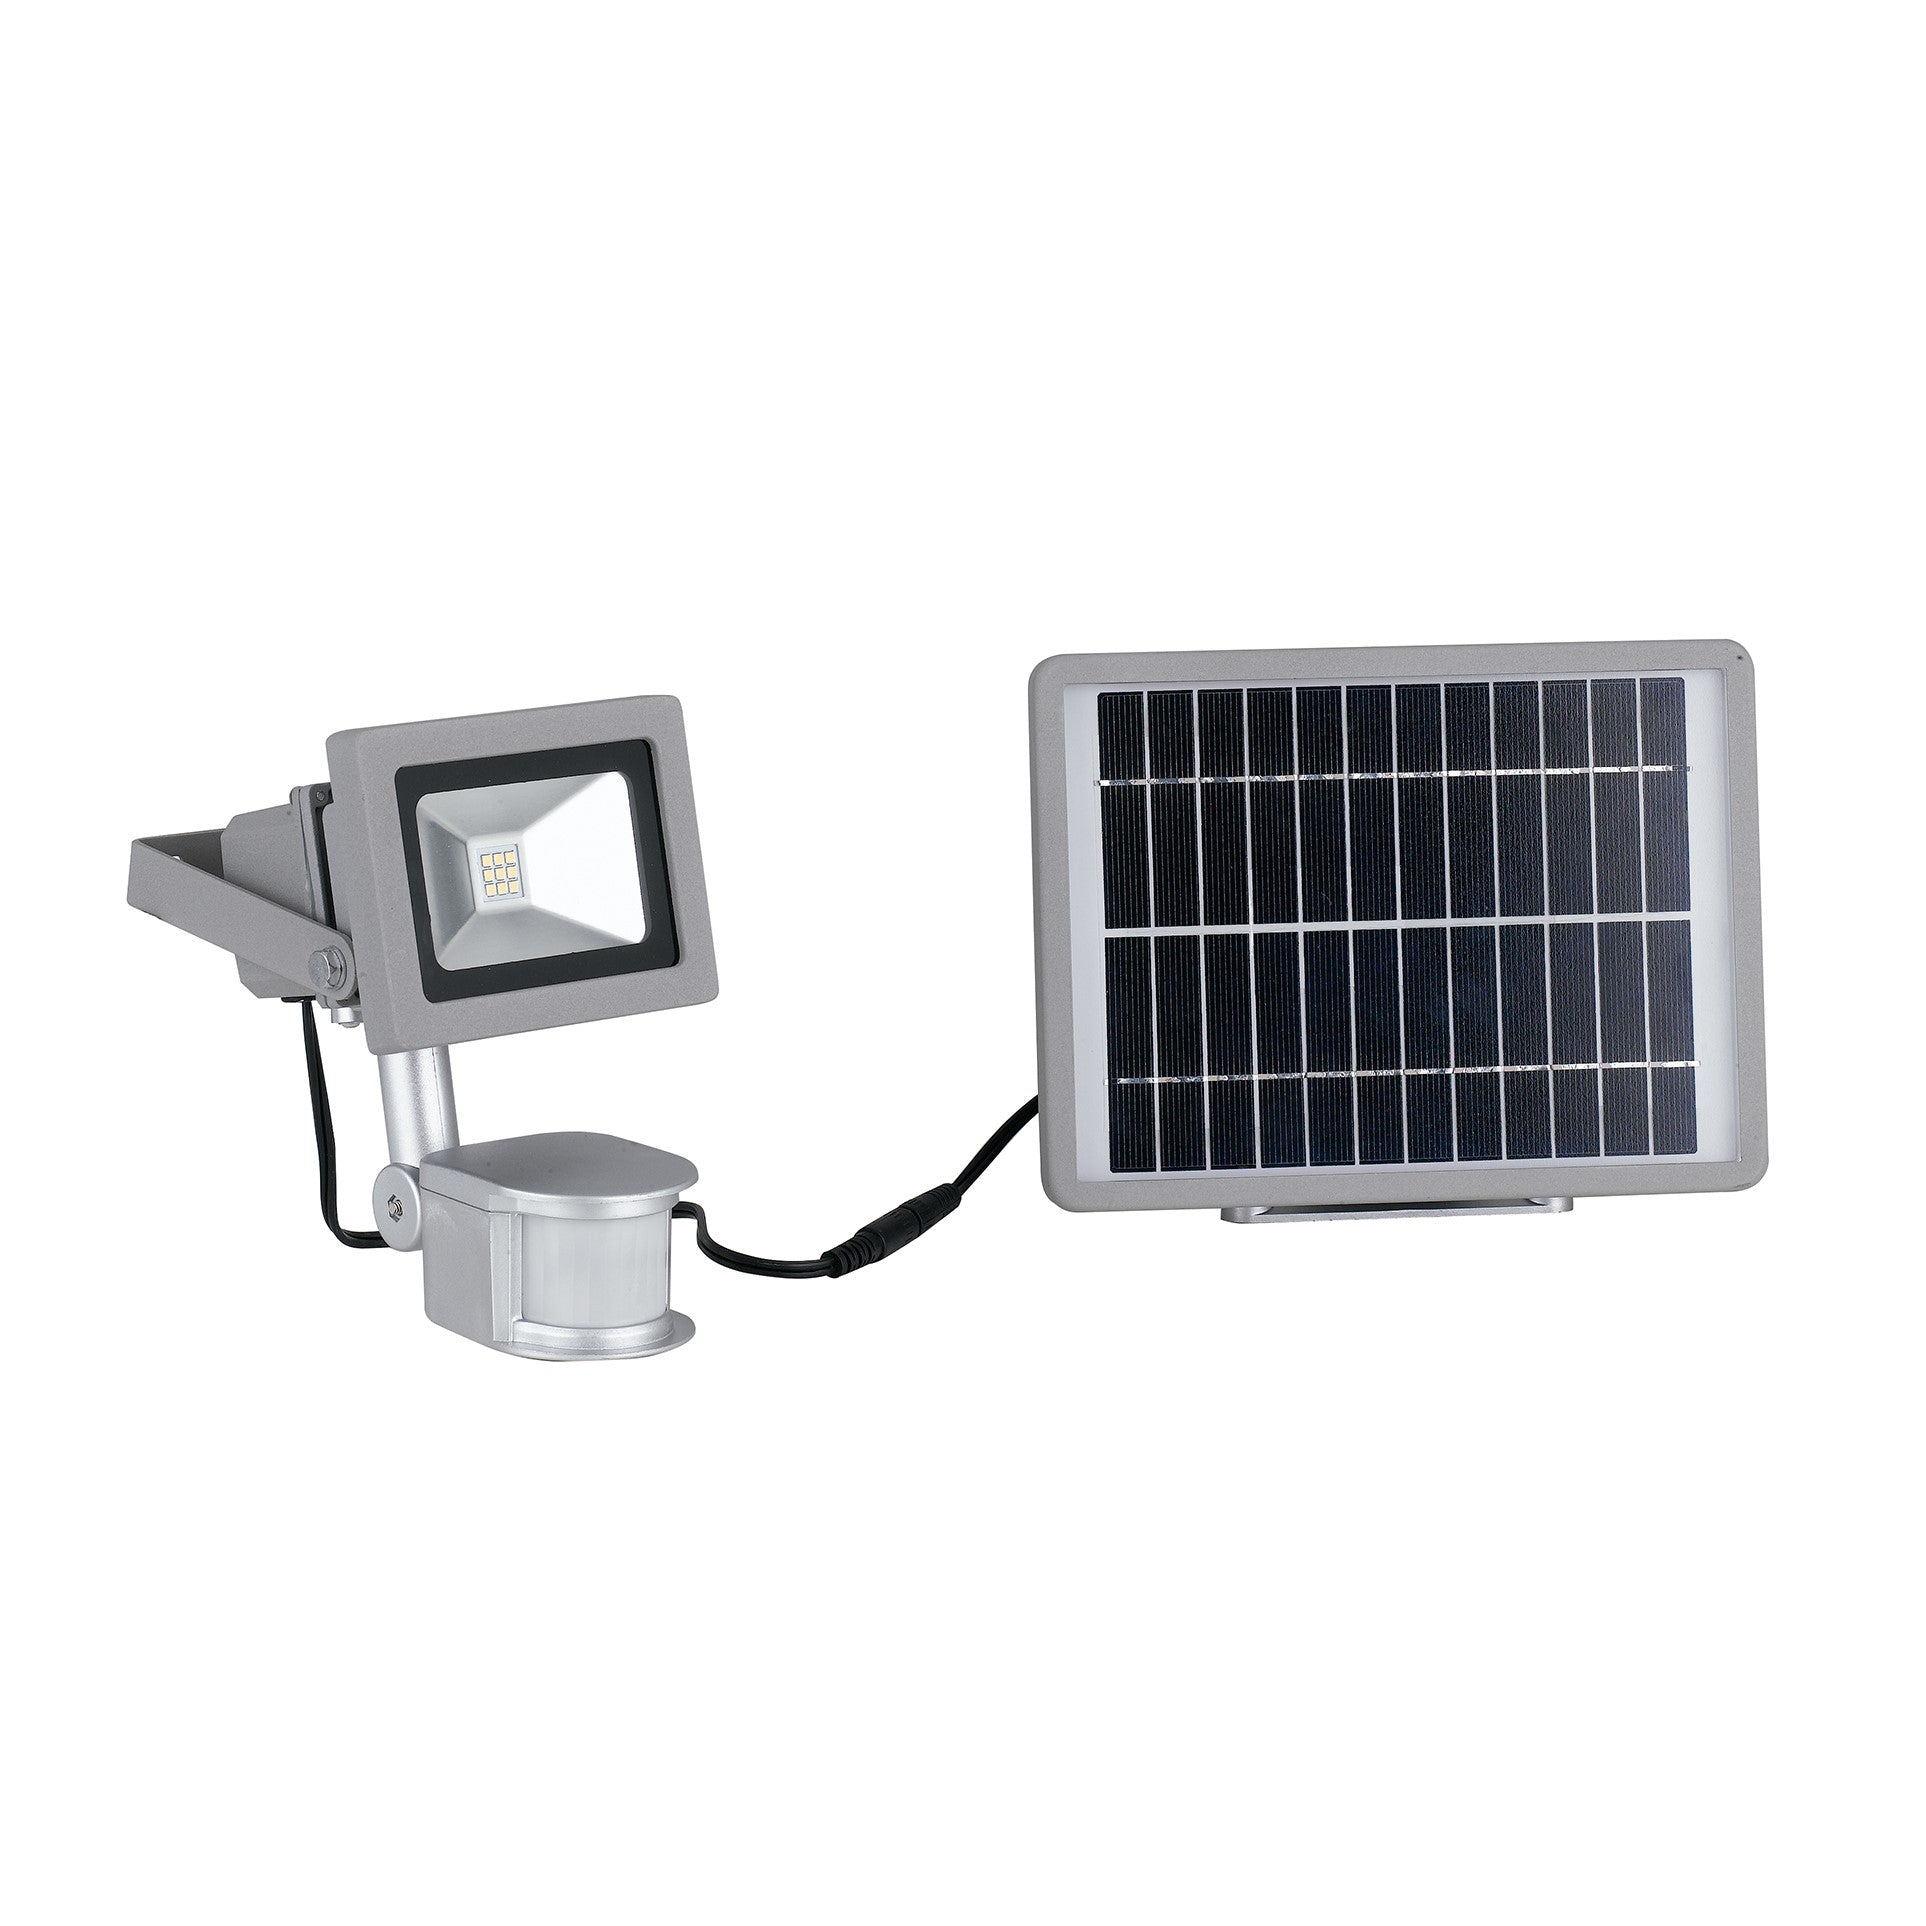 Proiettore per esterni Elios in alluminio silver, con pannello solare incluso e sensore di movimento regolabile integrato